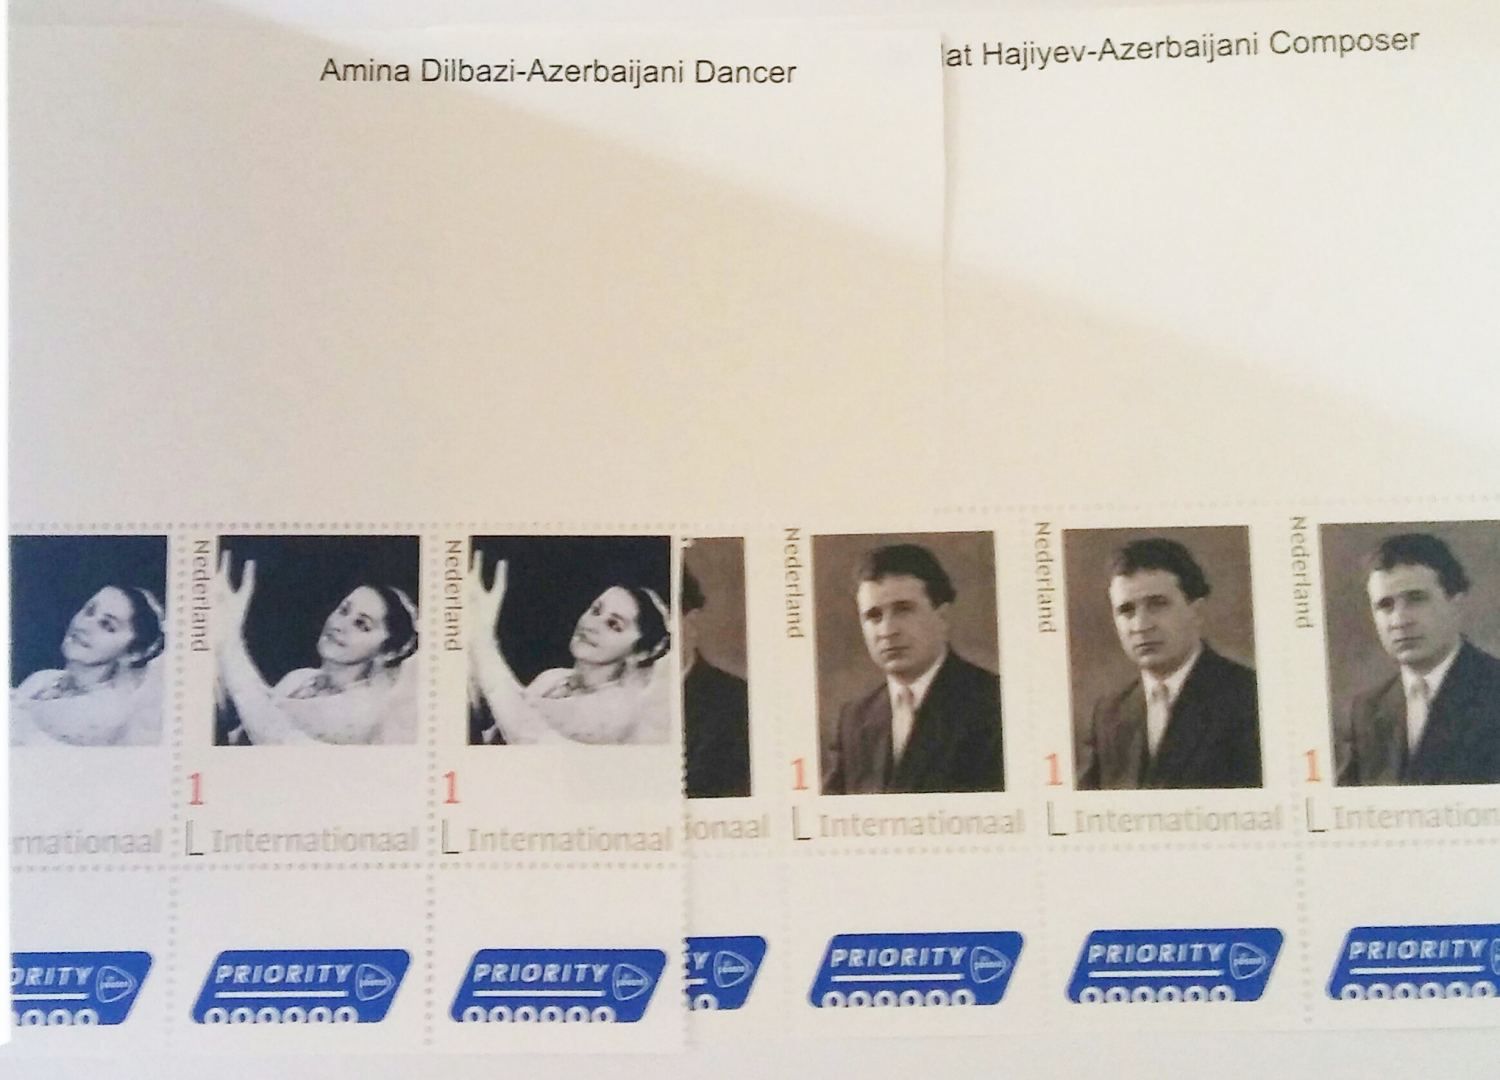 In den Niederlanden sind Briefmarken von Amina Dilbasi und Dschovdet Hadschiyev herausgegebenen